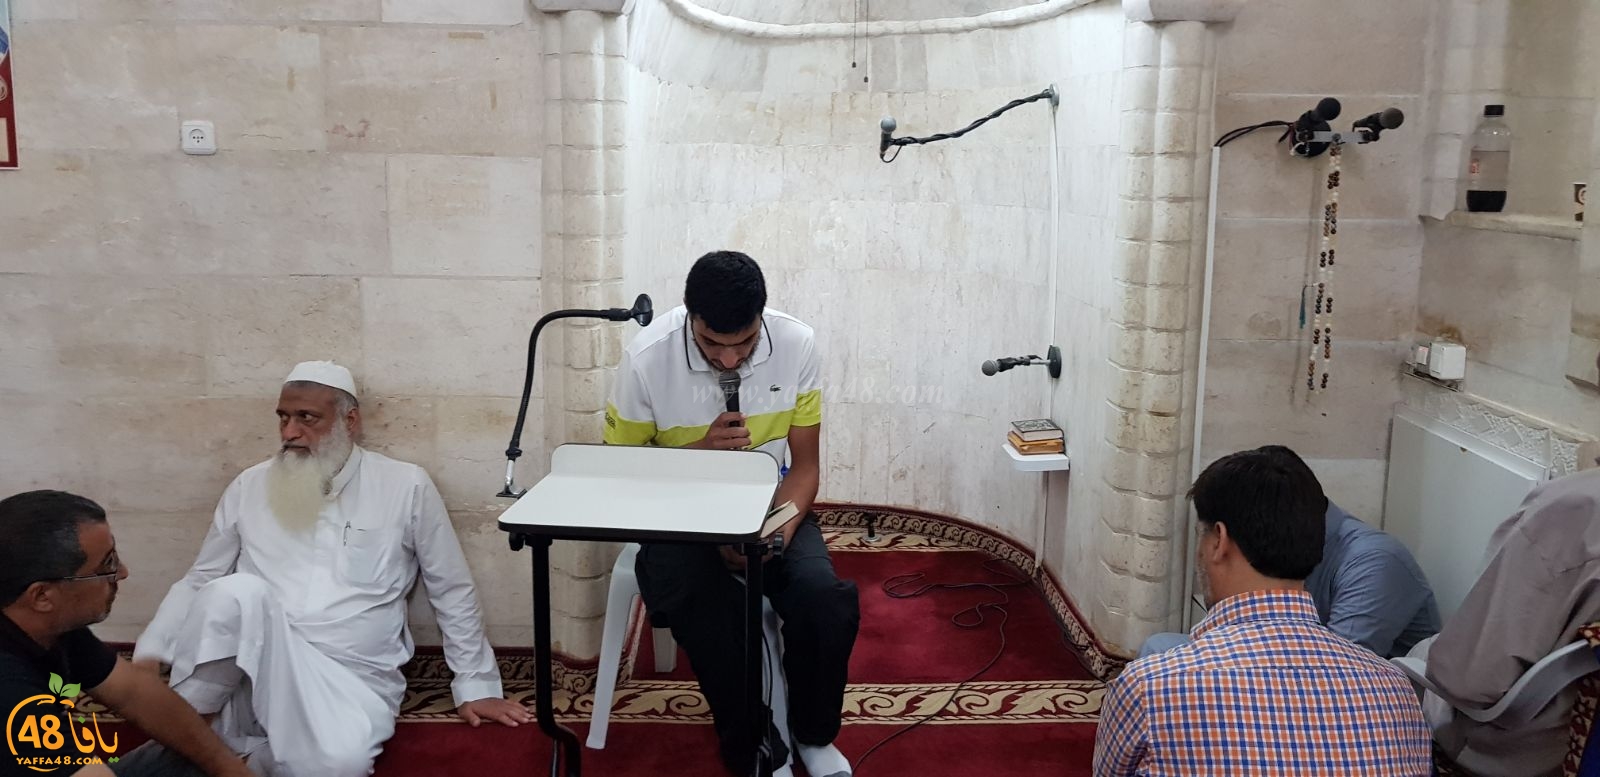 بالصور: محاضرة قيّمة للدكتور رائد فتحي في المسجد العمري الكبير باللد 